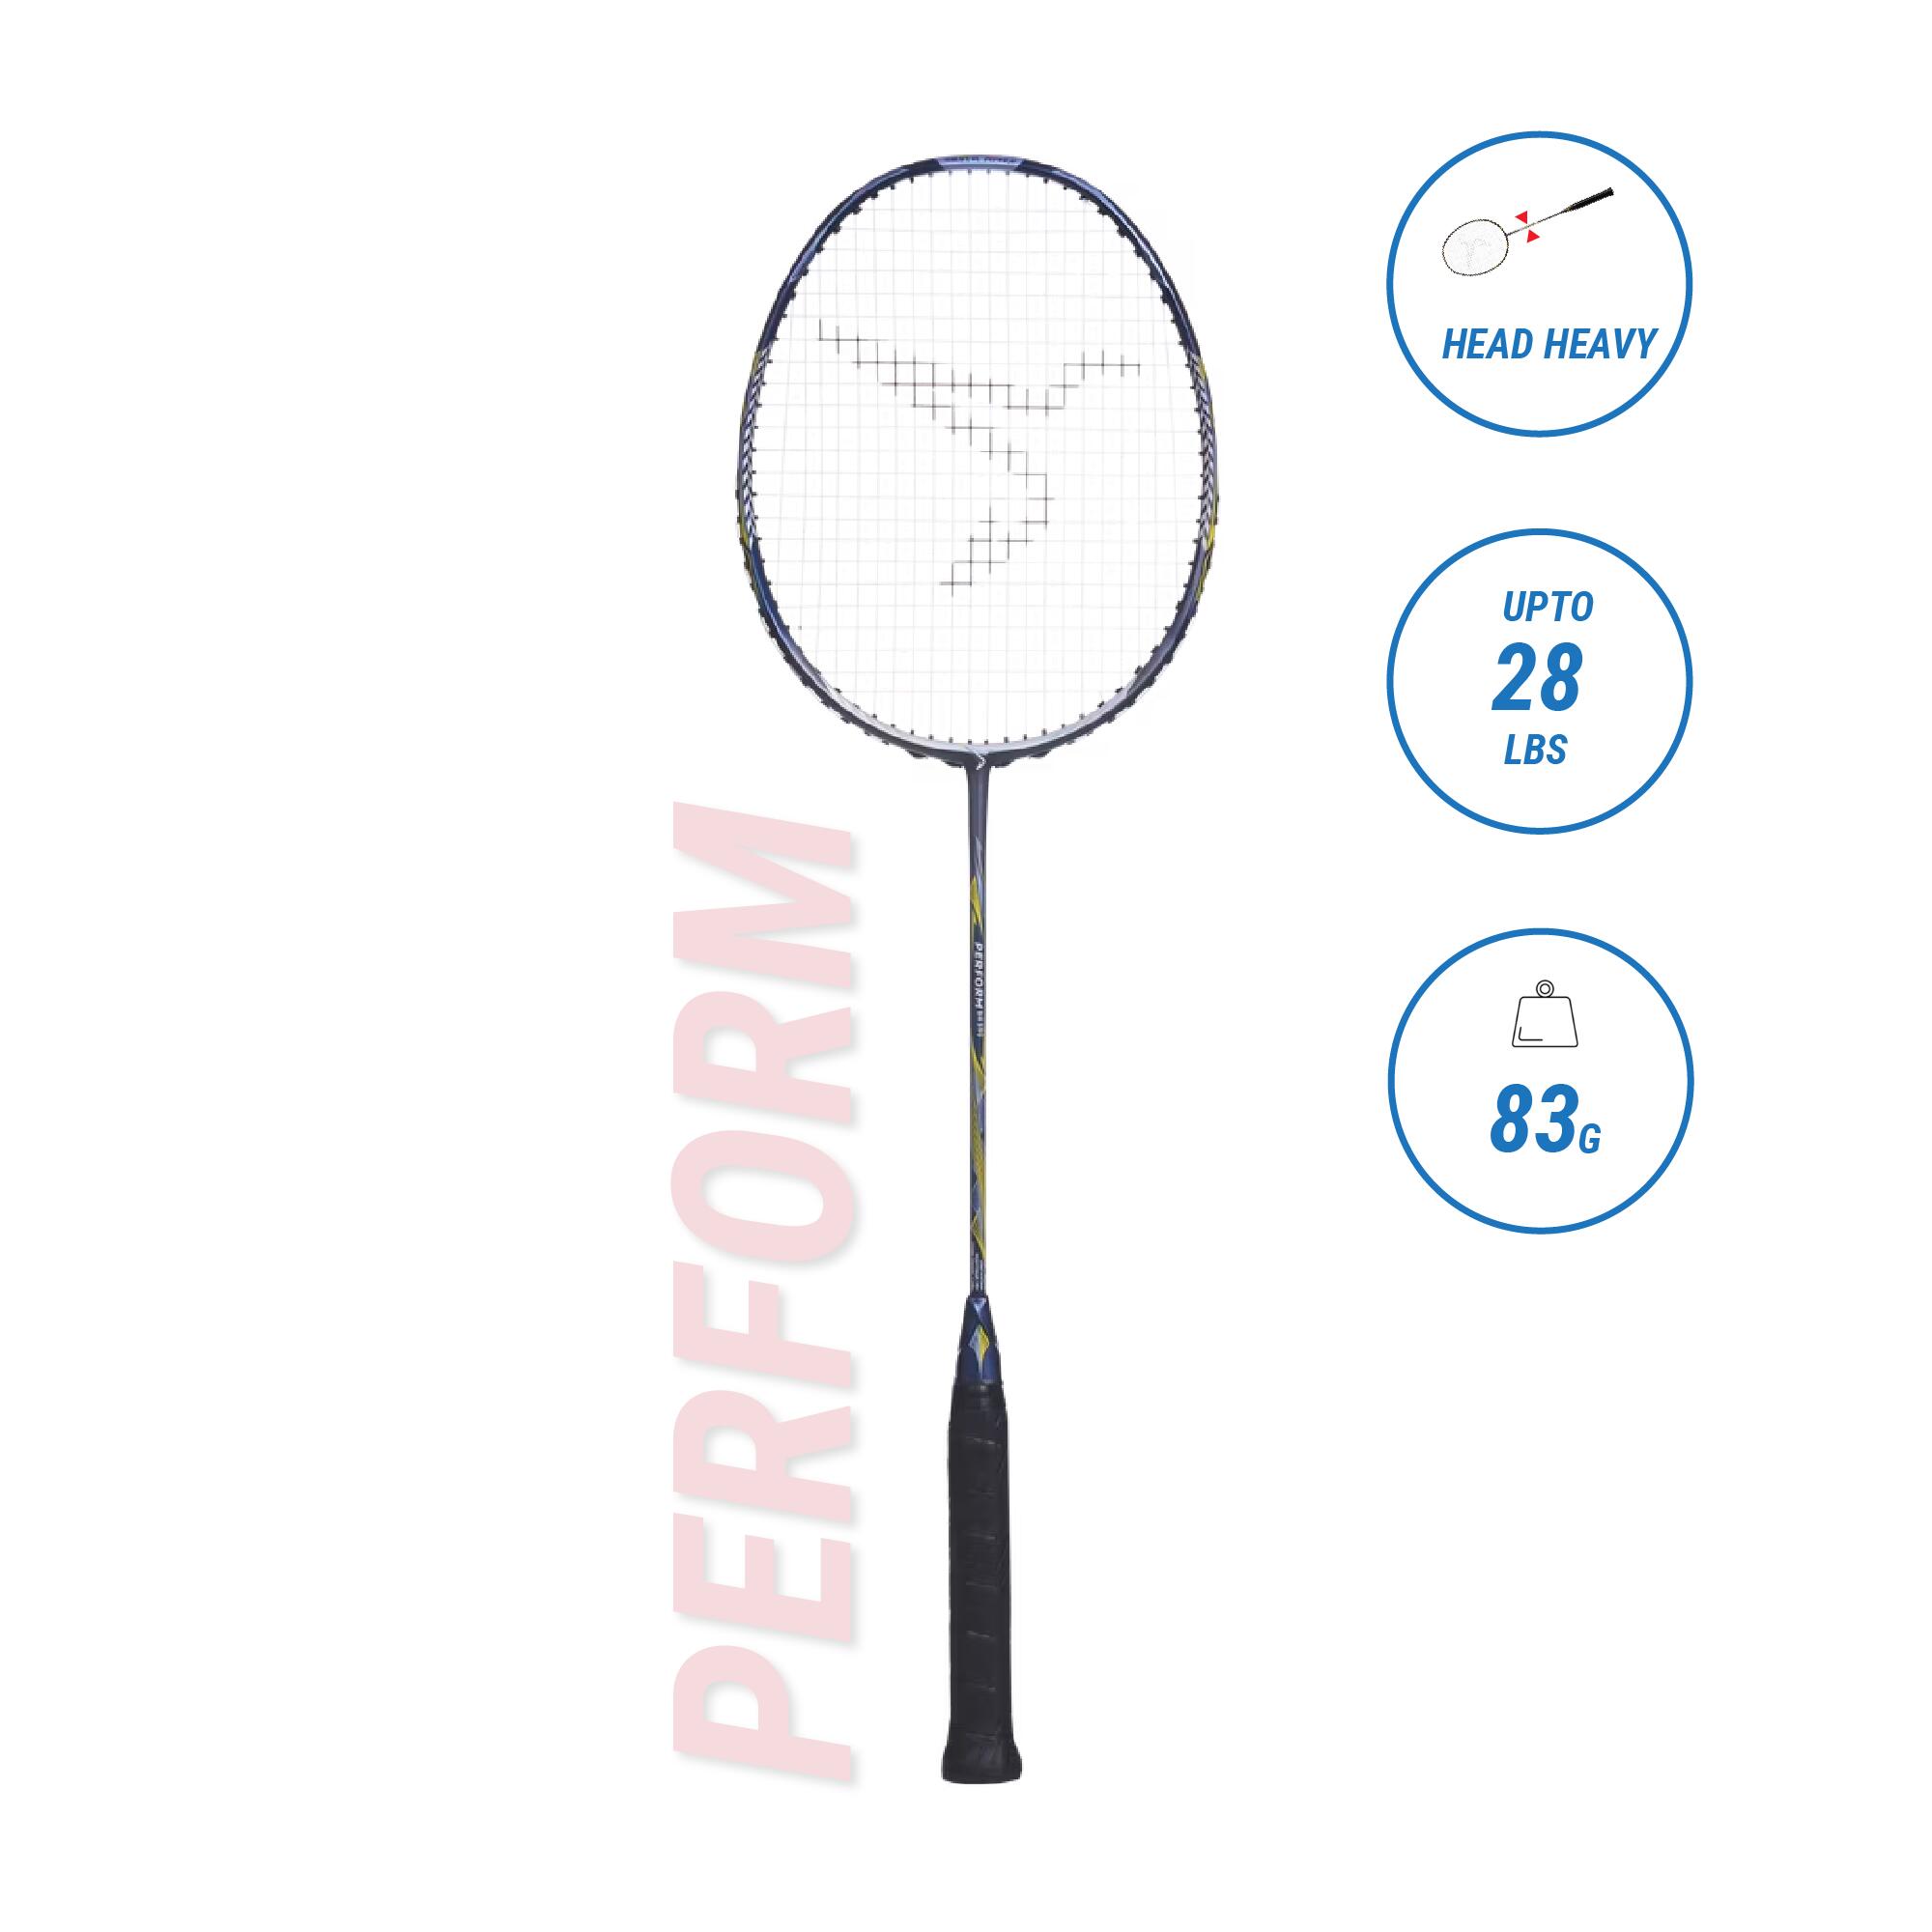 Buy Badminton Racket Online Decathlon